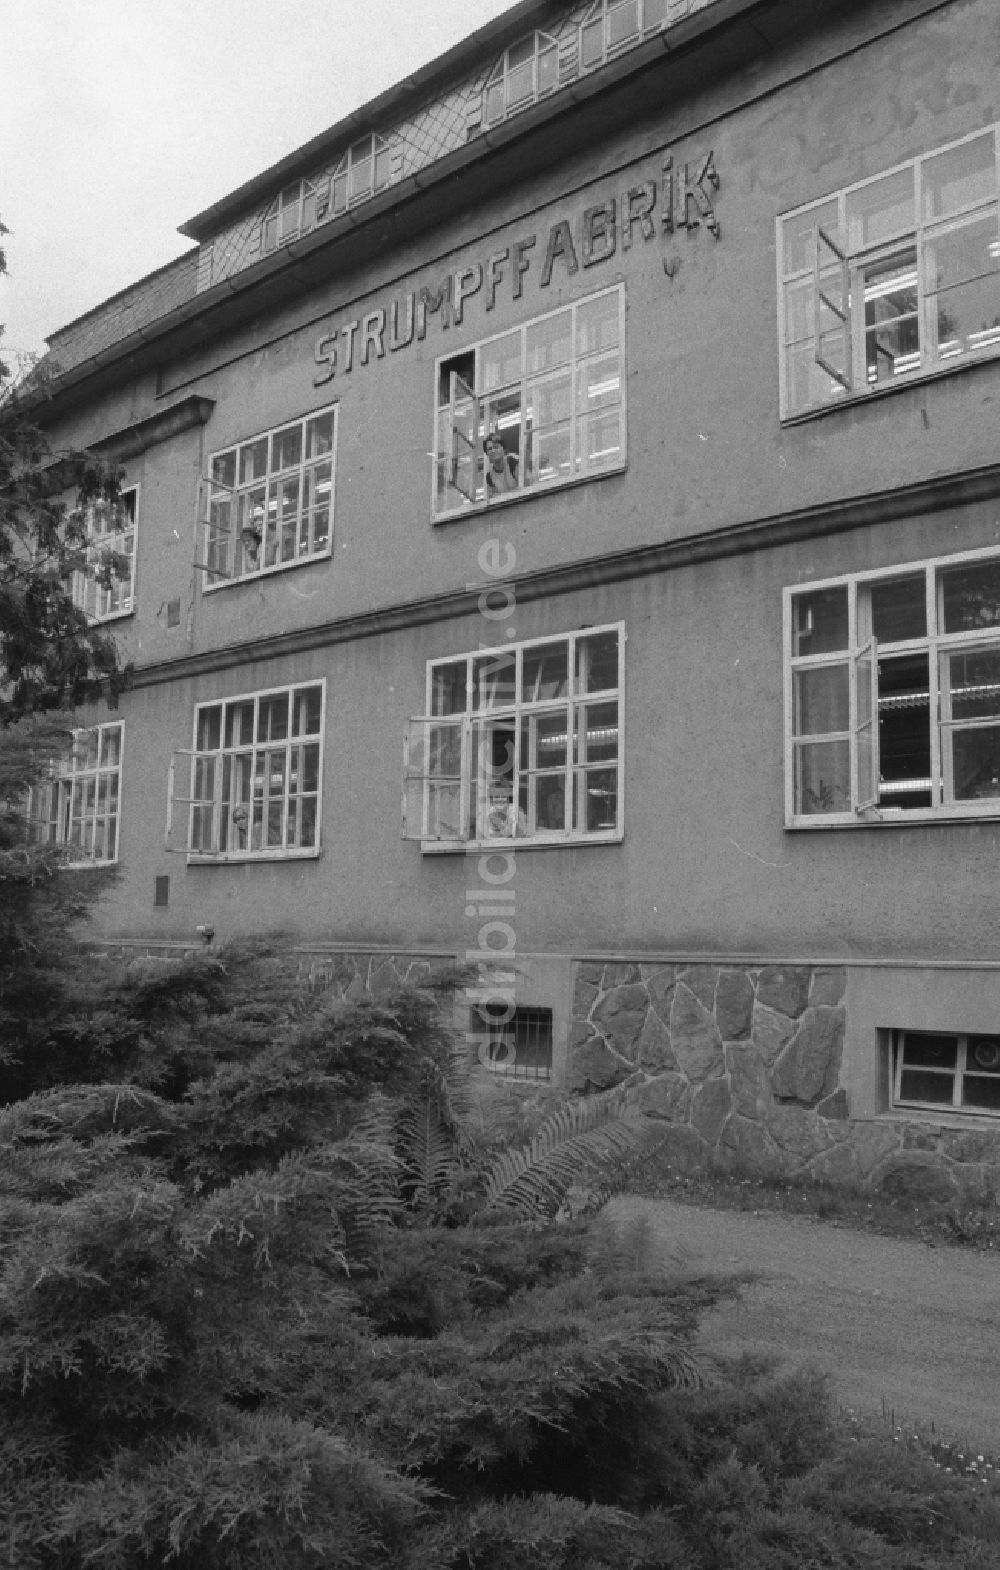 DDR-Fotoarchiv: Thalheim - Strumpffabrik ESDA in Thalheim in Sachsen in der DDR